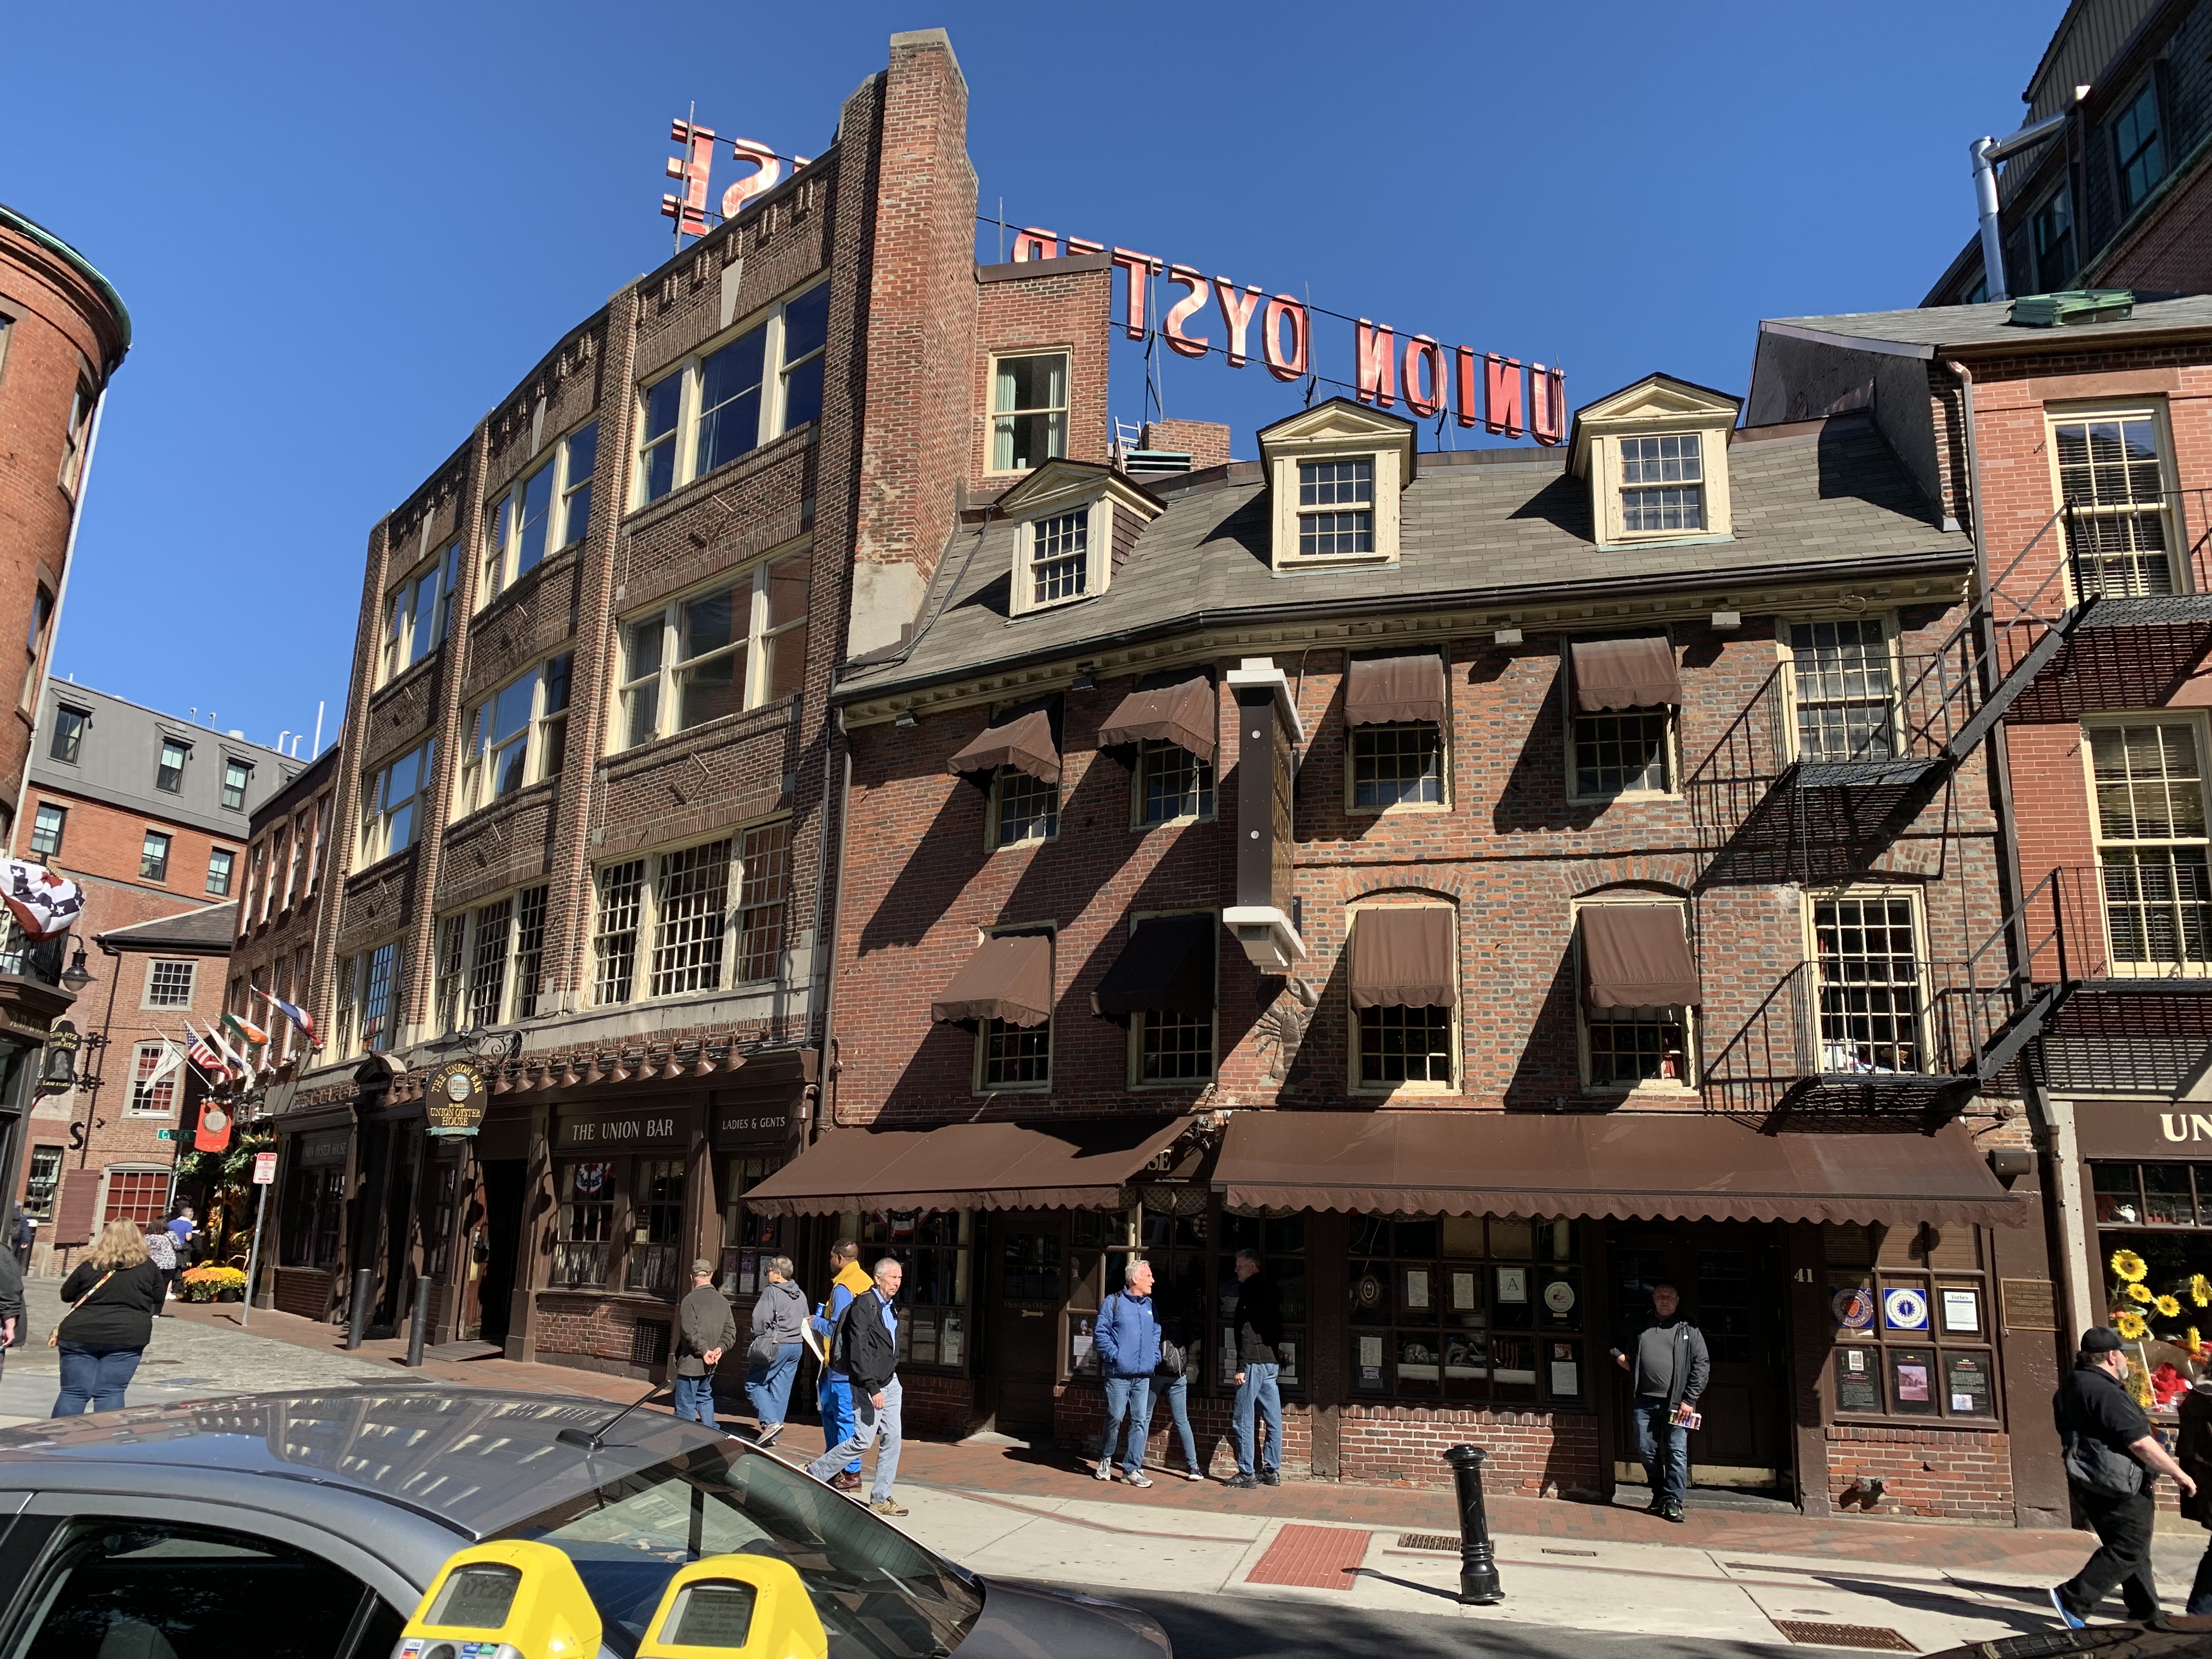 Bean town…Boston